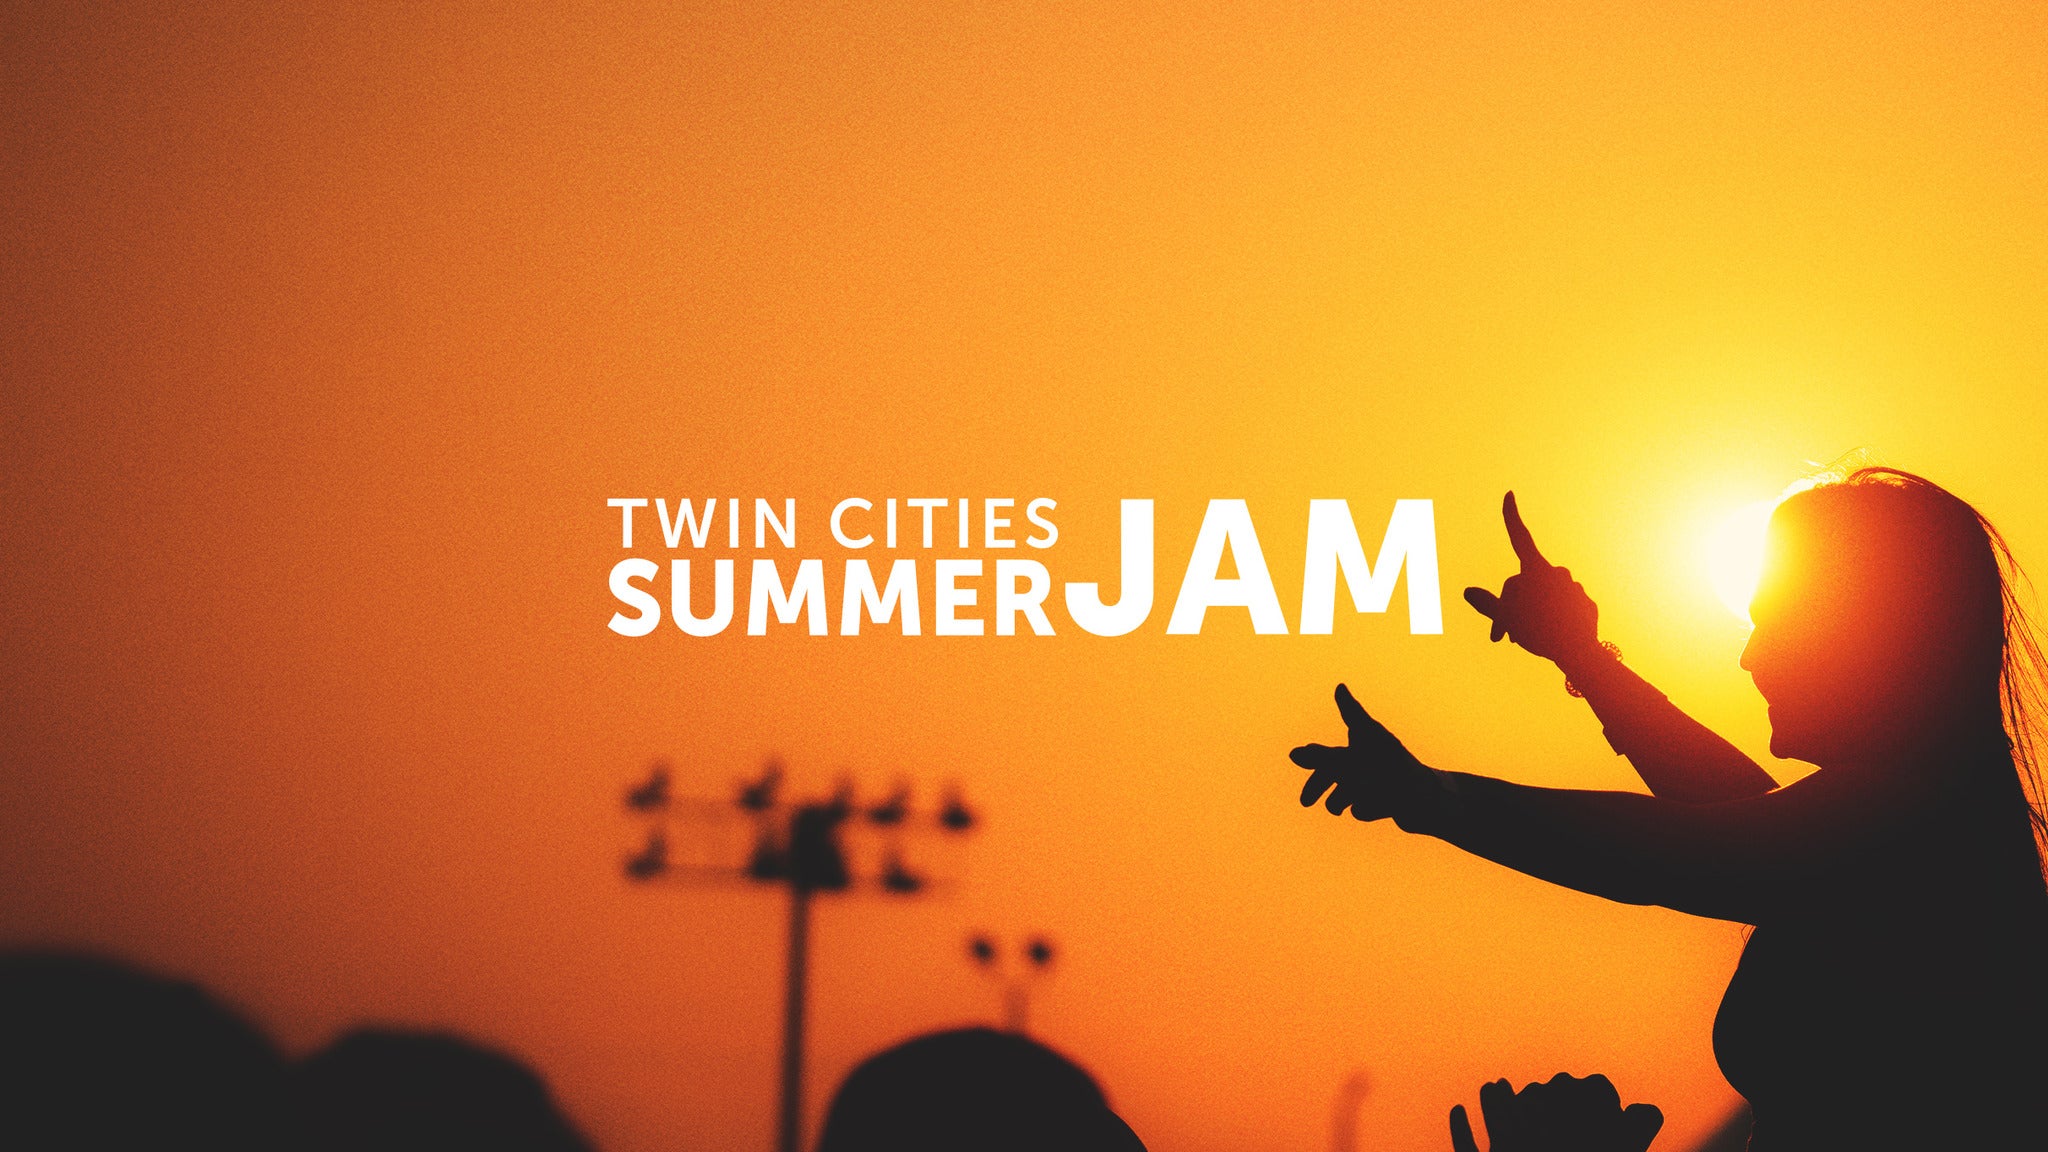 Twin Cities Summer Jam presale information on freepresalepasswords.com